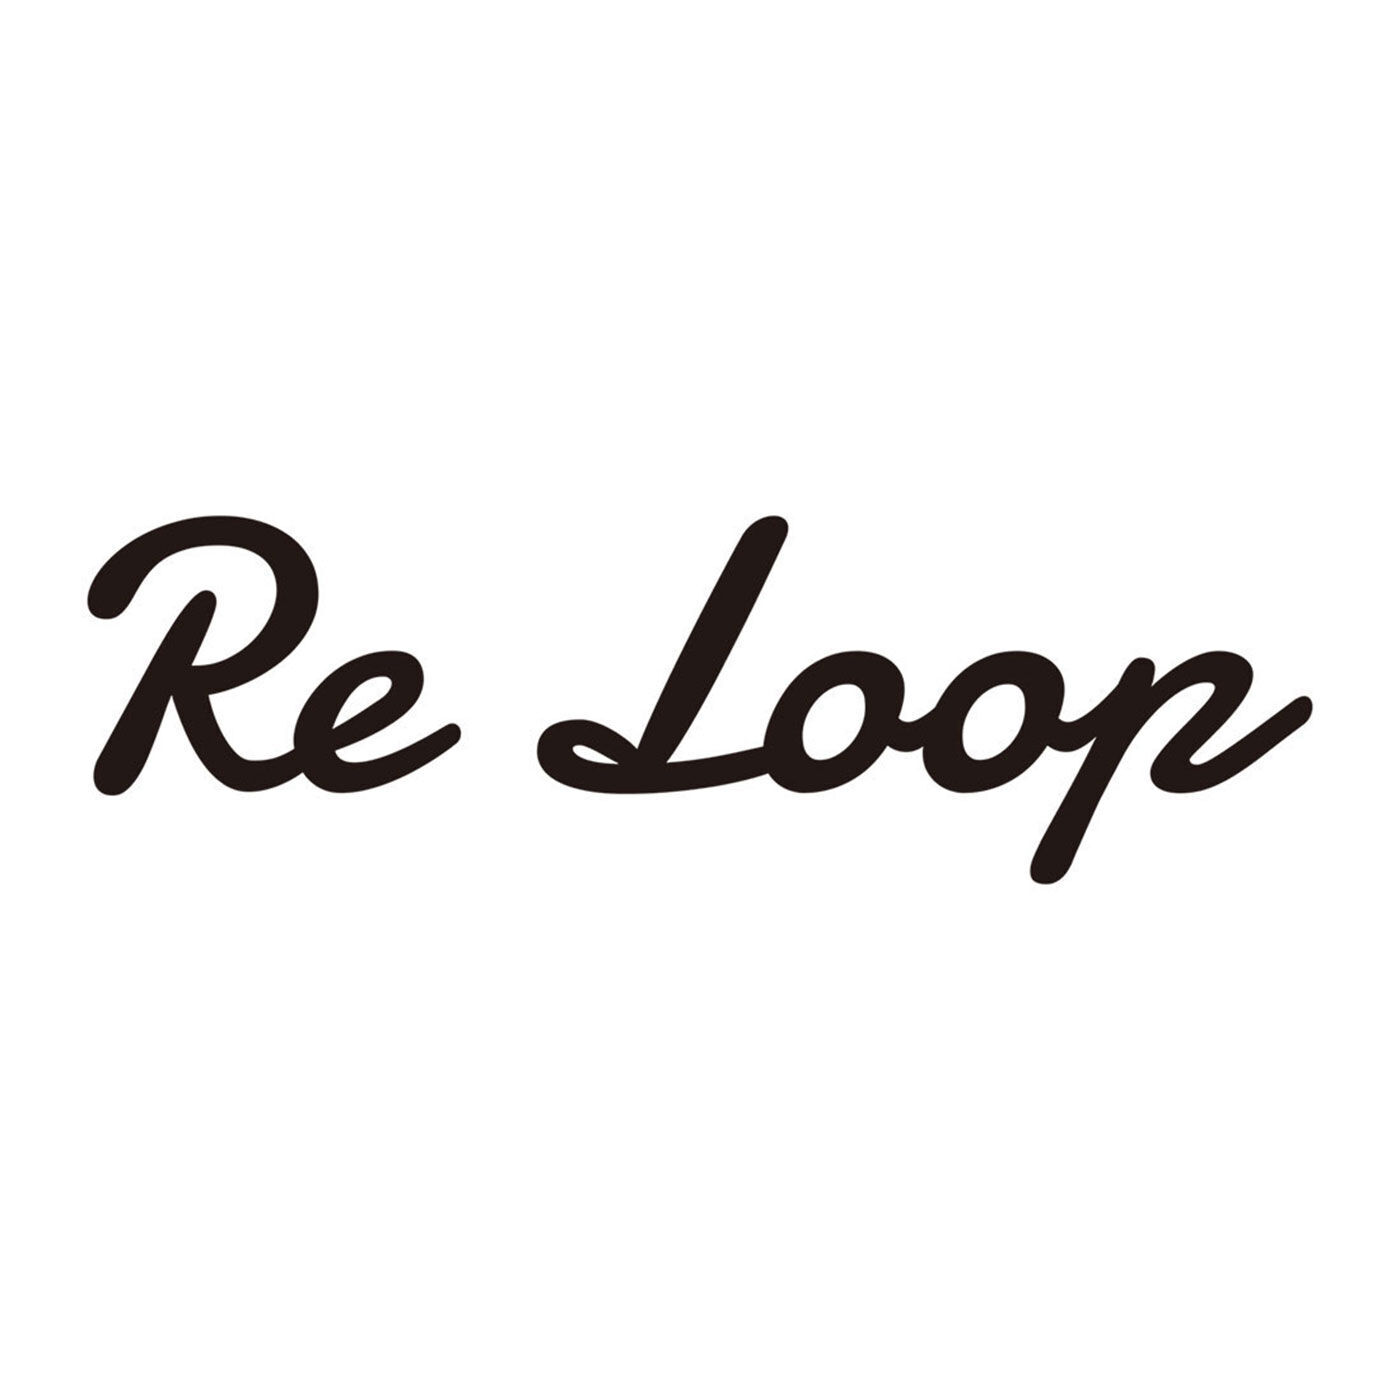 フェリシモの雑貨 Kraso|Re Loop アンクレットソックス〈和紙ミックス・バイカラー〉の会|【Re Loop】奈良の老舗靴下工場「SOUKI」のブランドです。人と環境にやさしい素材を使い、代々受け継がれてきた技術や知識を次世代に引き継ぐことを使命に生まれたブランドで、素材の一部に「リサイクル糸」を使用しています。それらは、明治大正時代から続けられてきた技術をルーツとする紡績方法でつくられたもの。未利用のまま廃棄される繊維原料や、紡績、織布工場で発生する糸くず、布地などを集めてほぐしなおした原料を使用して、糸に紡いでいます。このアンクレットソックスに使われているのは、奈良県の名産「吉野葛」の”搾りかす”から作られた和紙のリサイクル糸。とてもユニーク！ そして、そんなリサイクル糸を使い希少な編み機でていねいに編み上げられた「Re Loop」の靴下は、ちょっぴり特別。それでいて毎日履くのにぴったりの相棒的存在です。